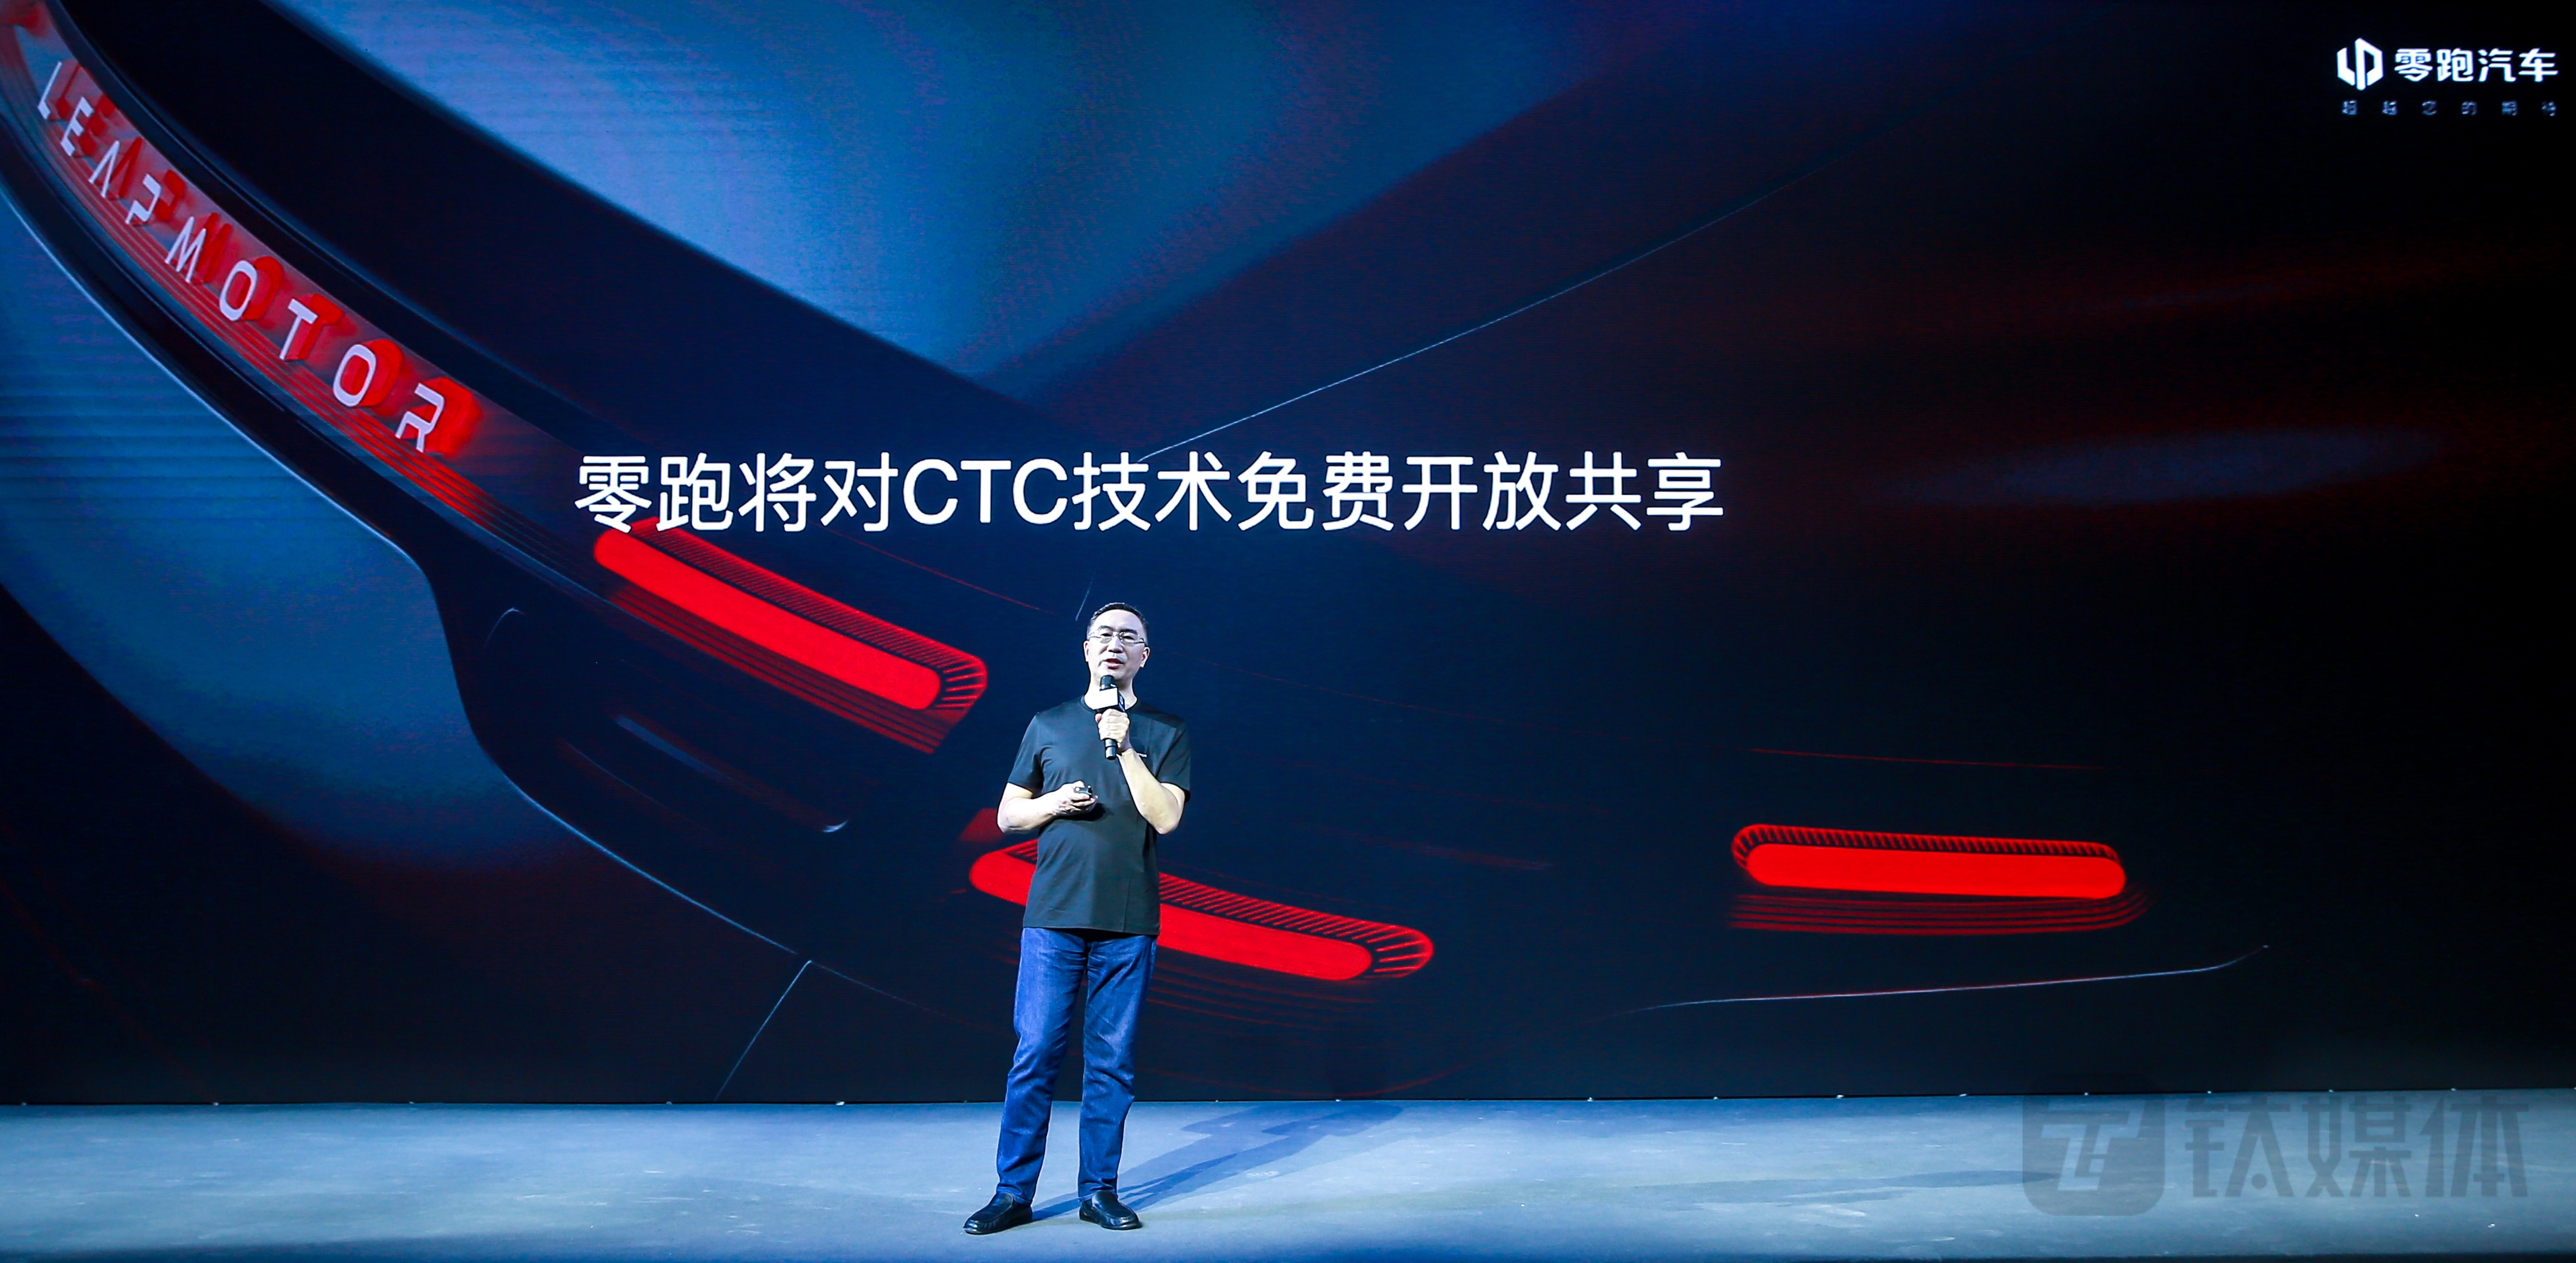 零跑科技董事长朱江明宣布将对零跑智能动力CTC技术免费开放共享（图片来源：零跑汽车）